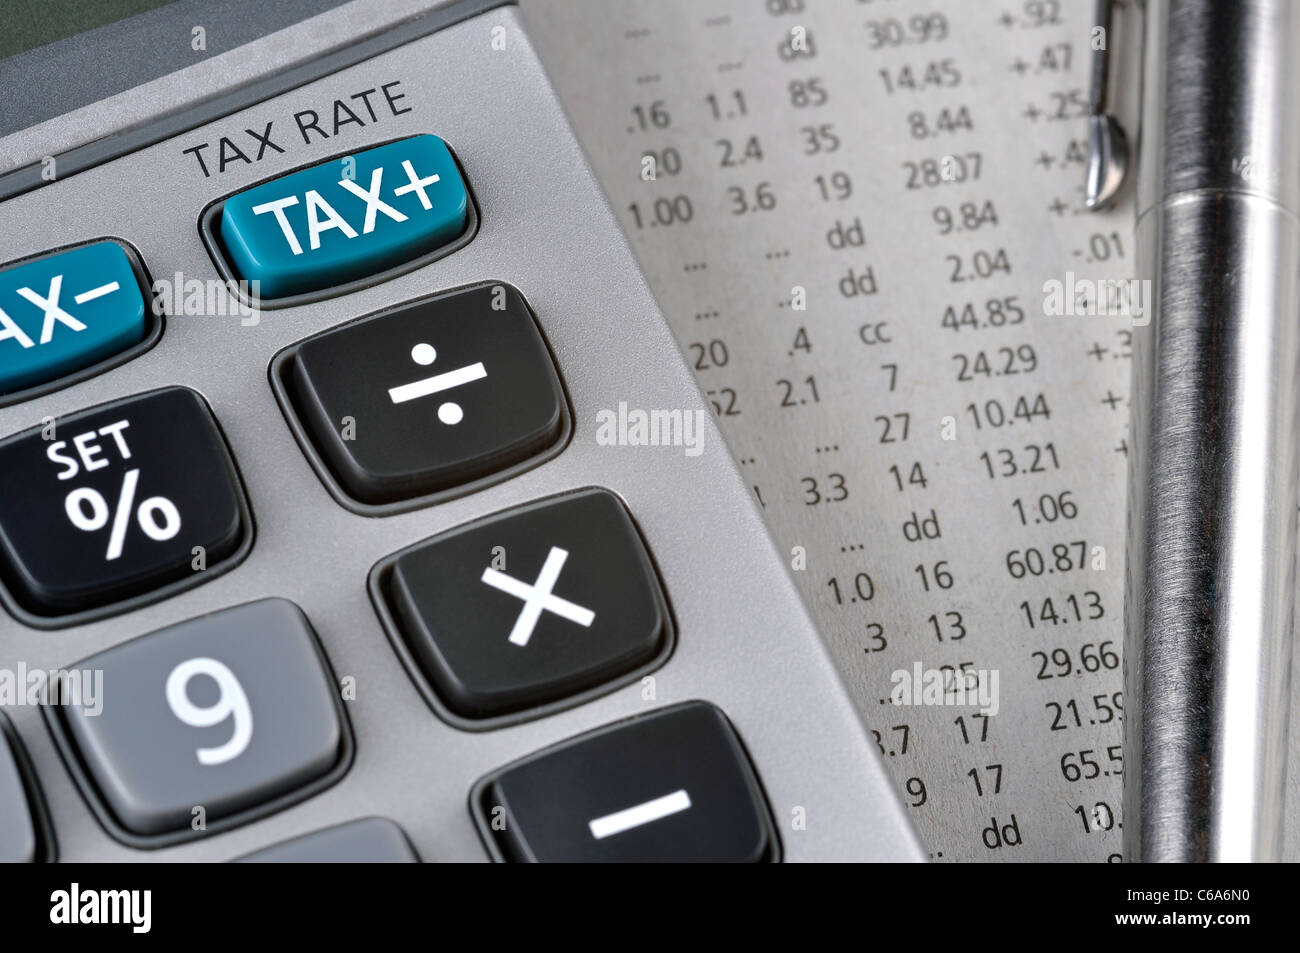 Détail de calculatrice, se concentrant la touche TAX, à côté d'une feuille de papier avec des chiffres et un stylo en métal. Banque D'Images